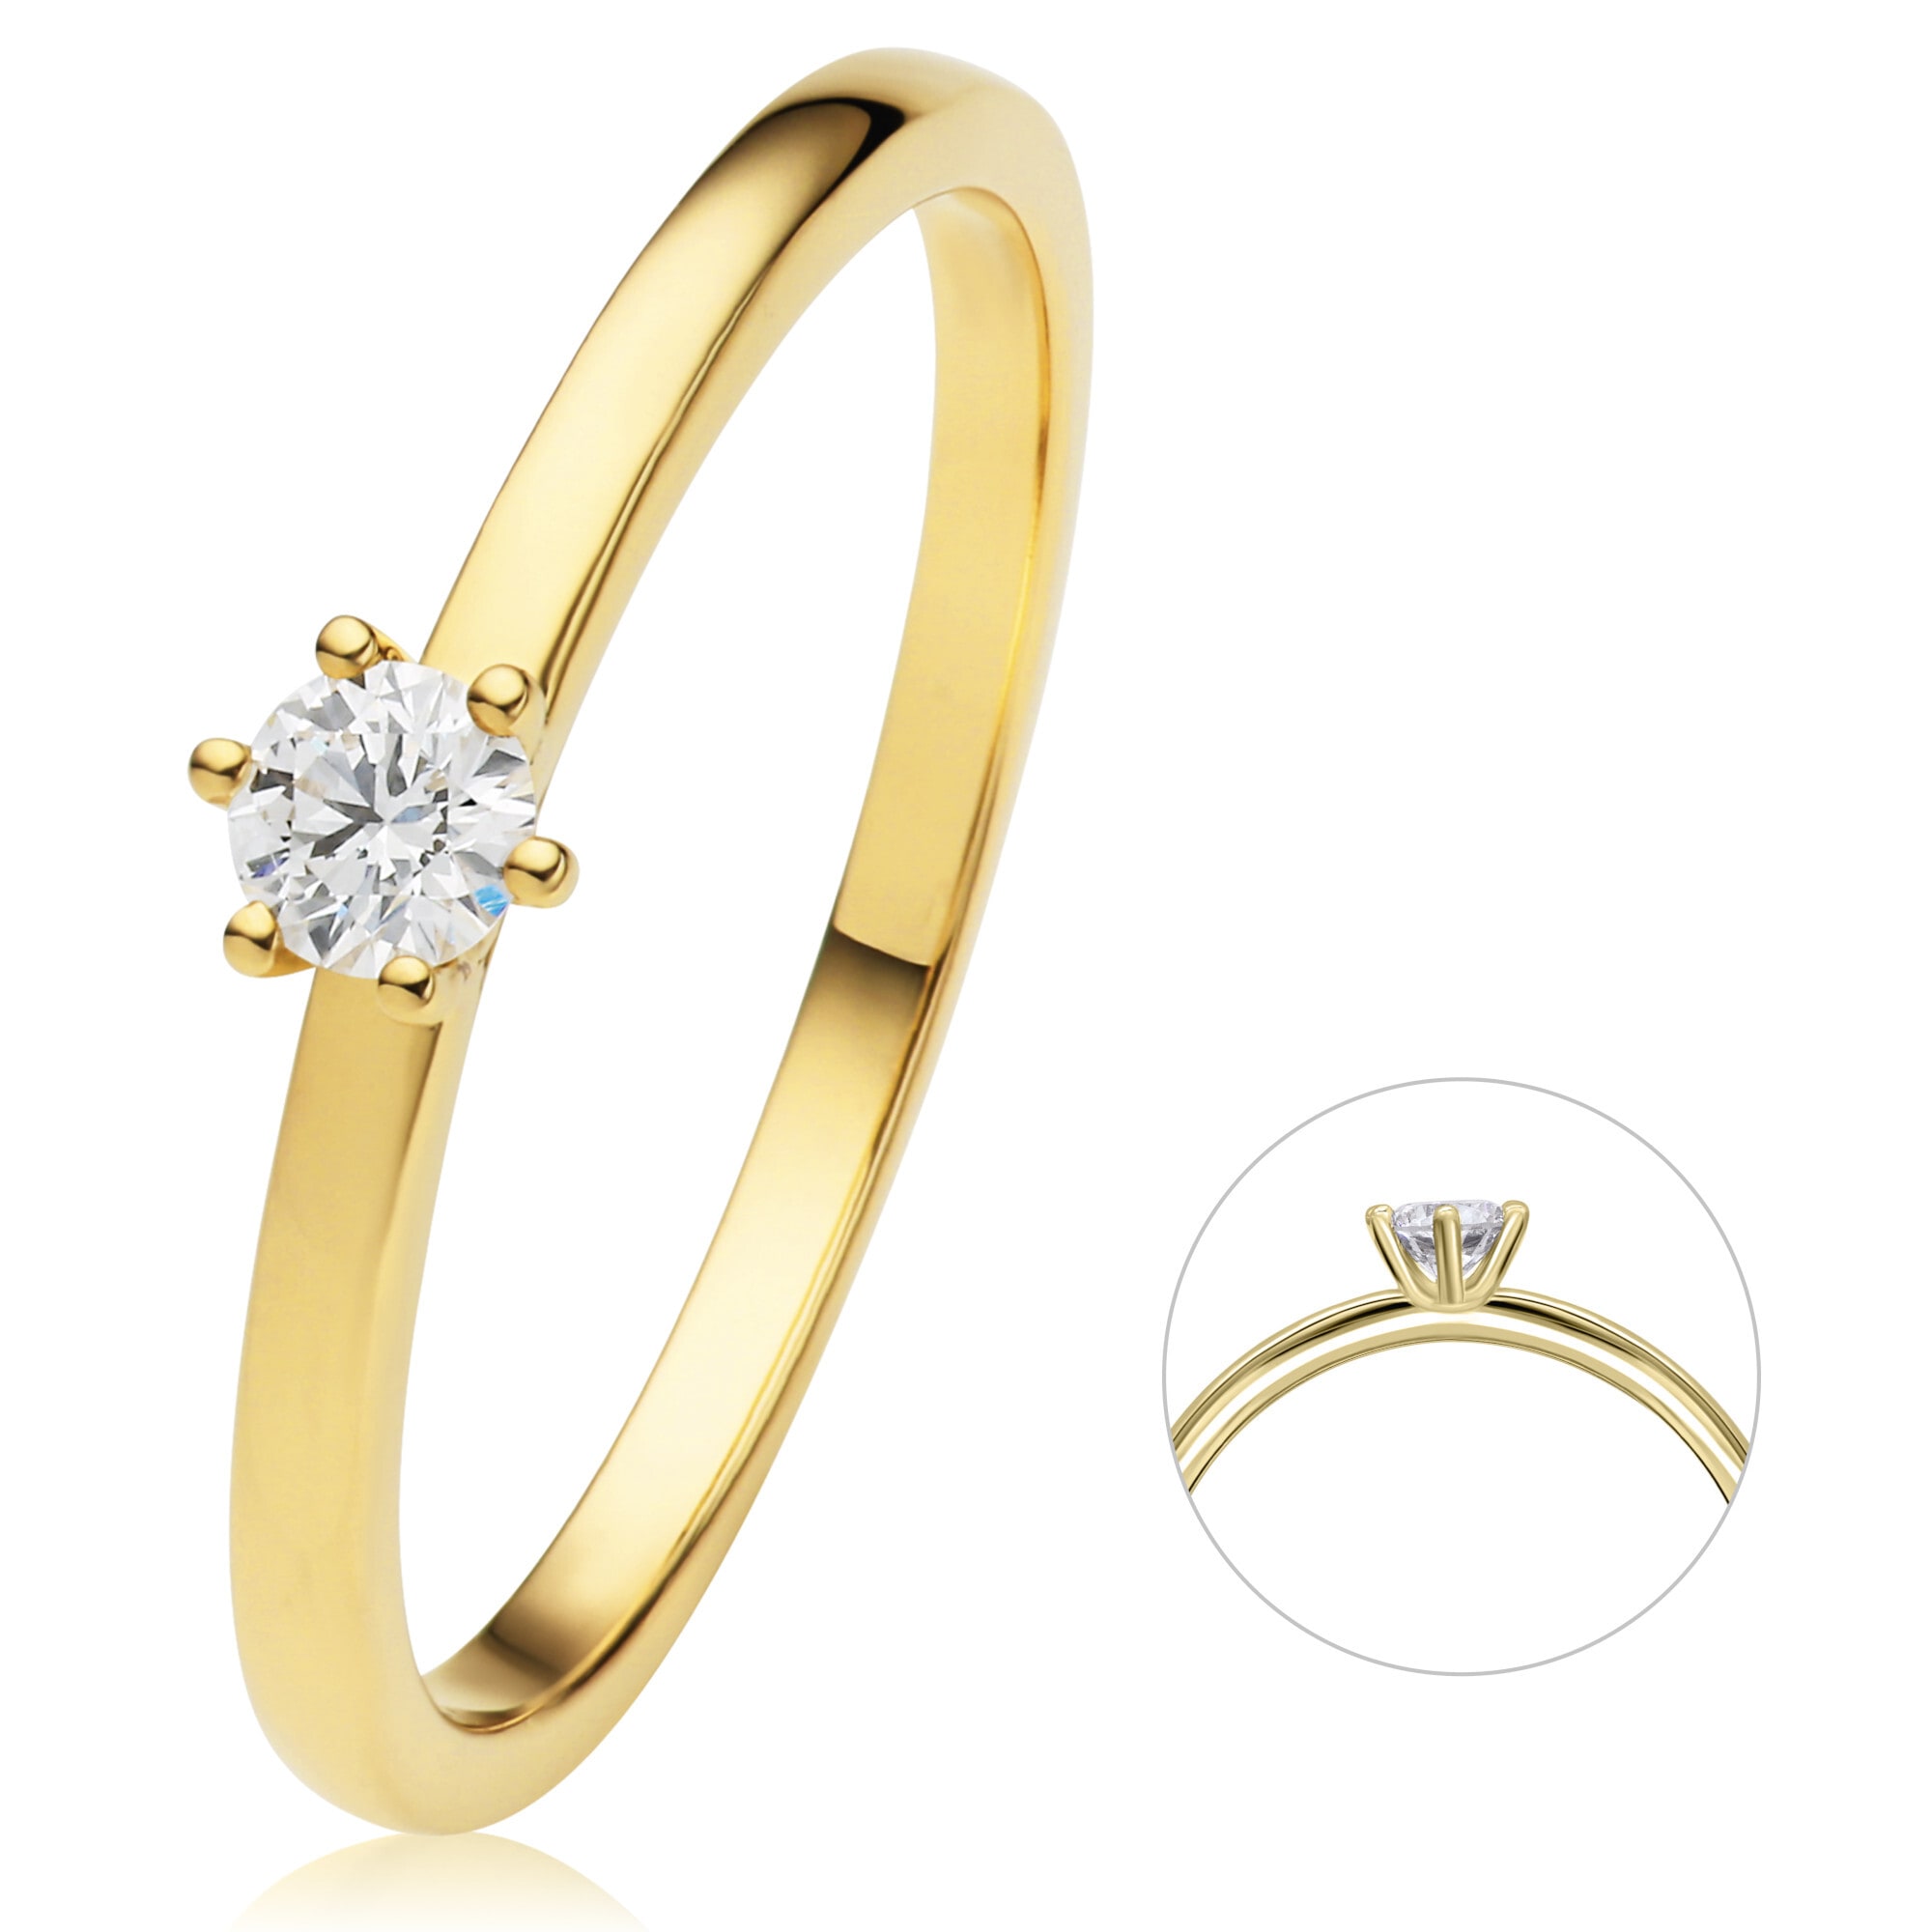 ONE ELEMENT 15 Schmuck Ring Brillant »0 Gelbgold« ct 750 Gold Diamant Diamantring aus Damen